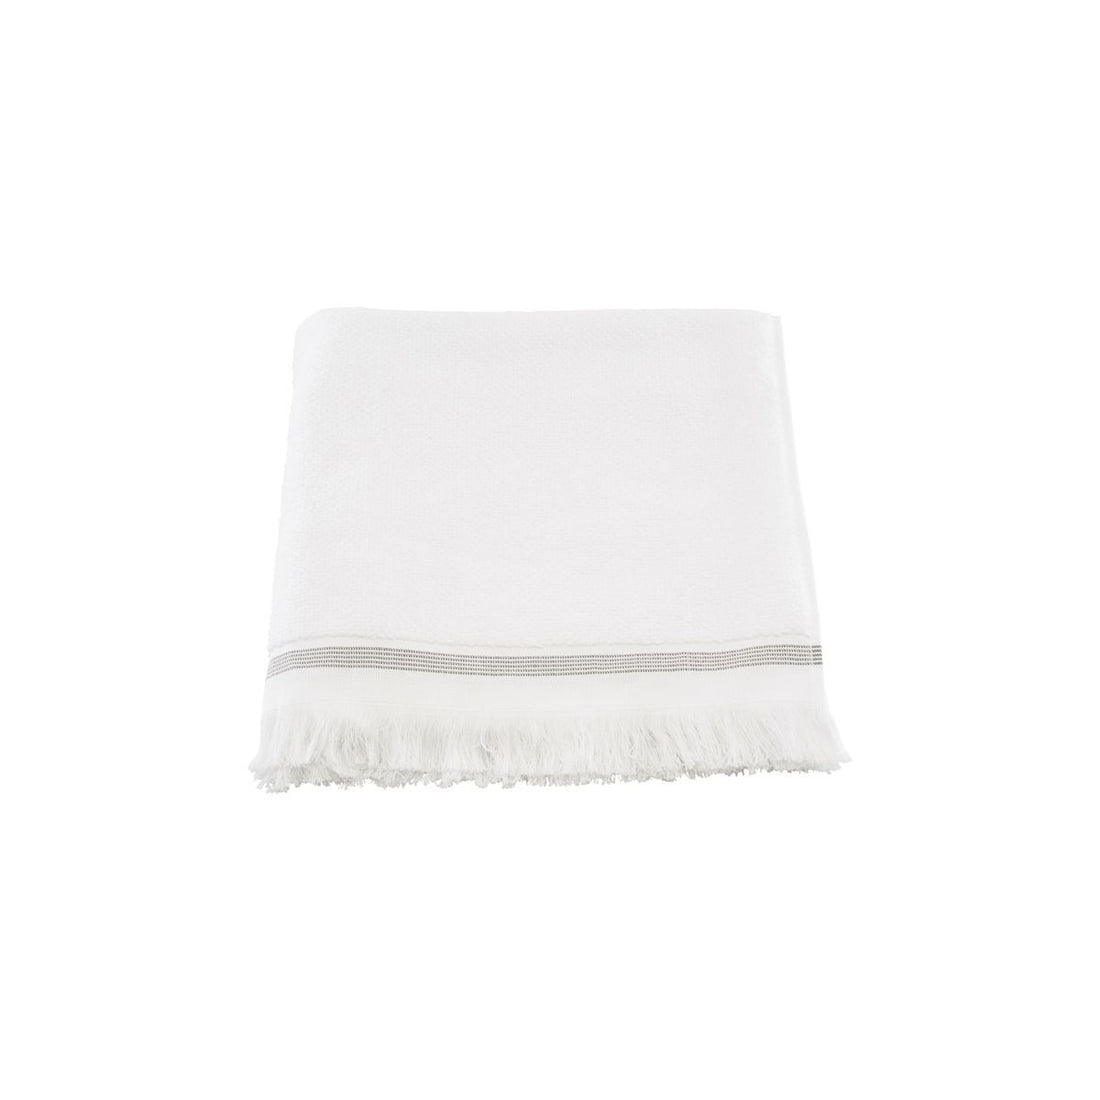 Meraki towel, 70x140 cm, white with gray stripes